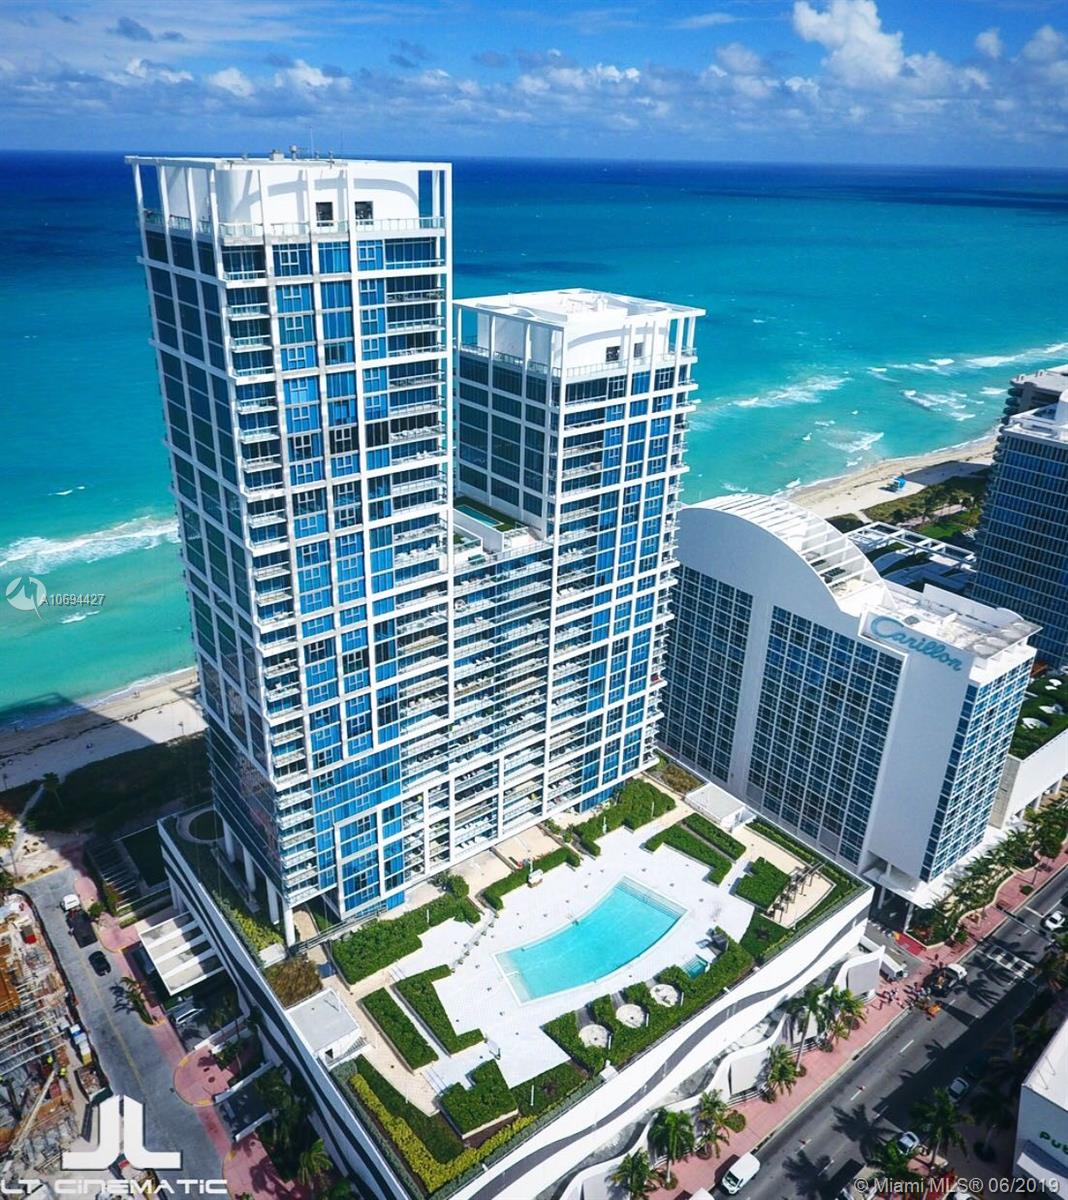 Carillon Condo Miami Beach | Central/Hotel Tower - Apartments For Sale